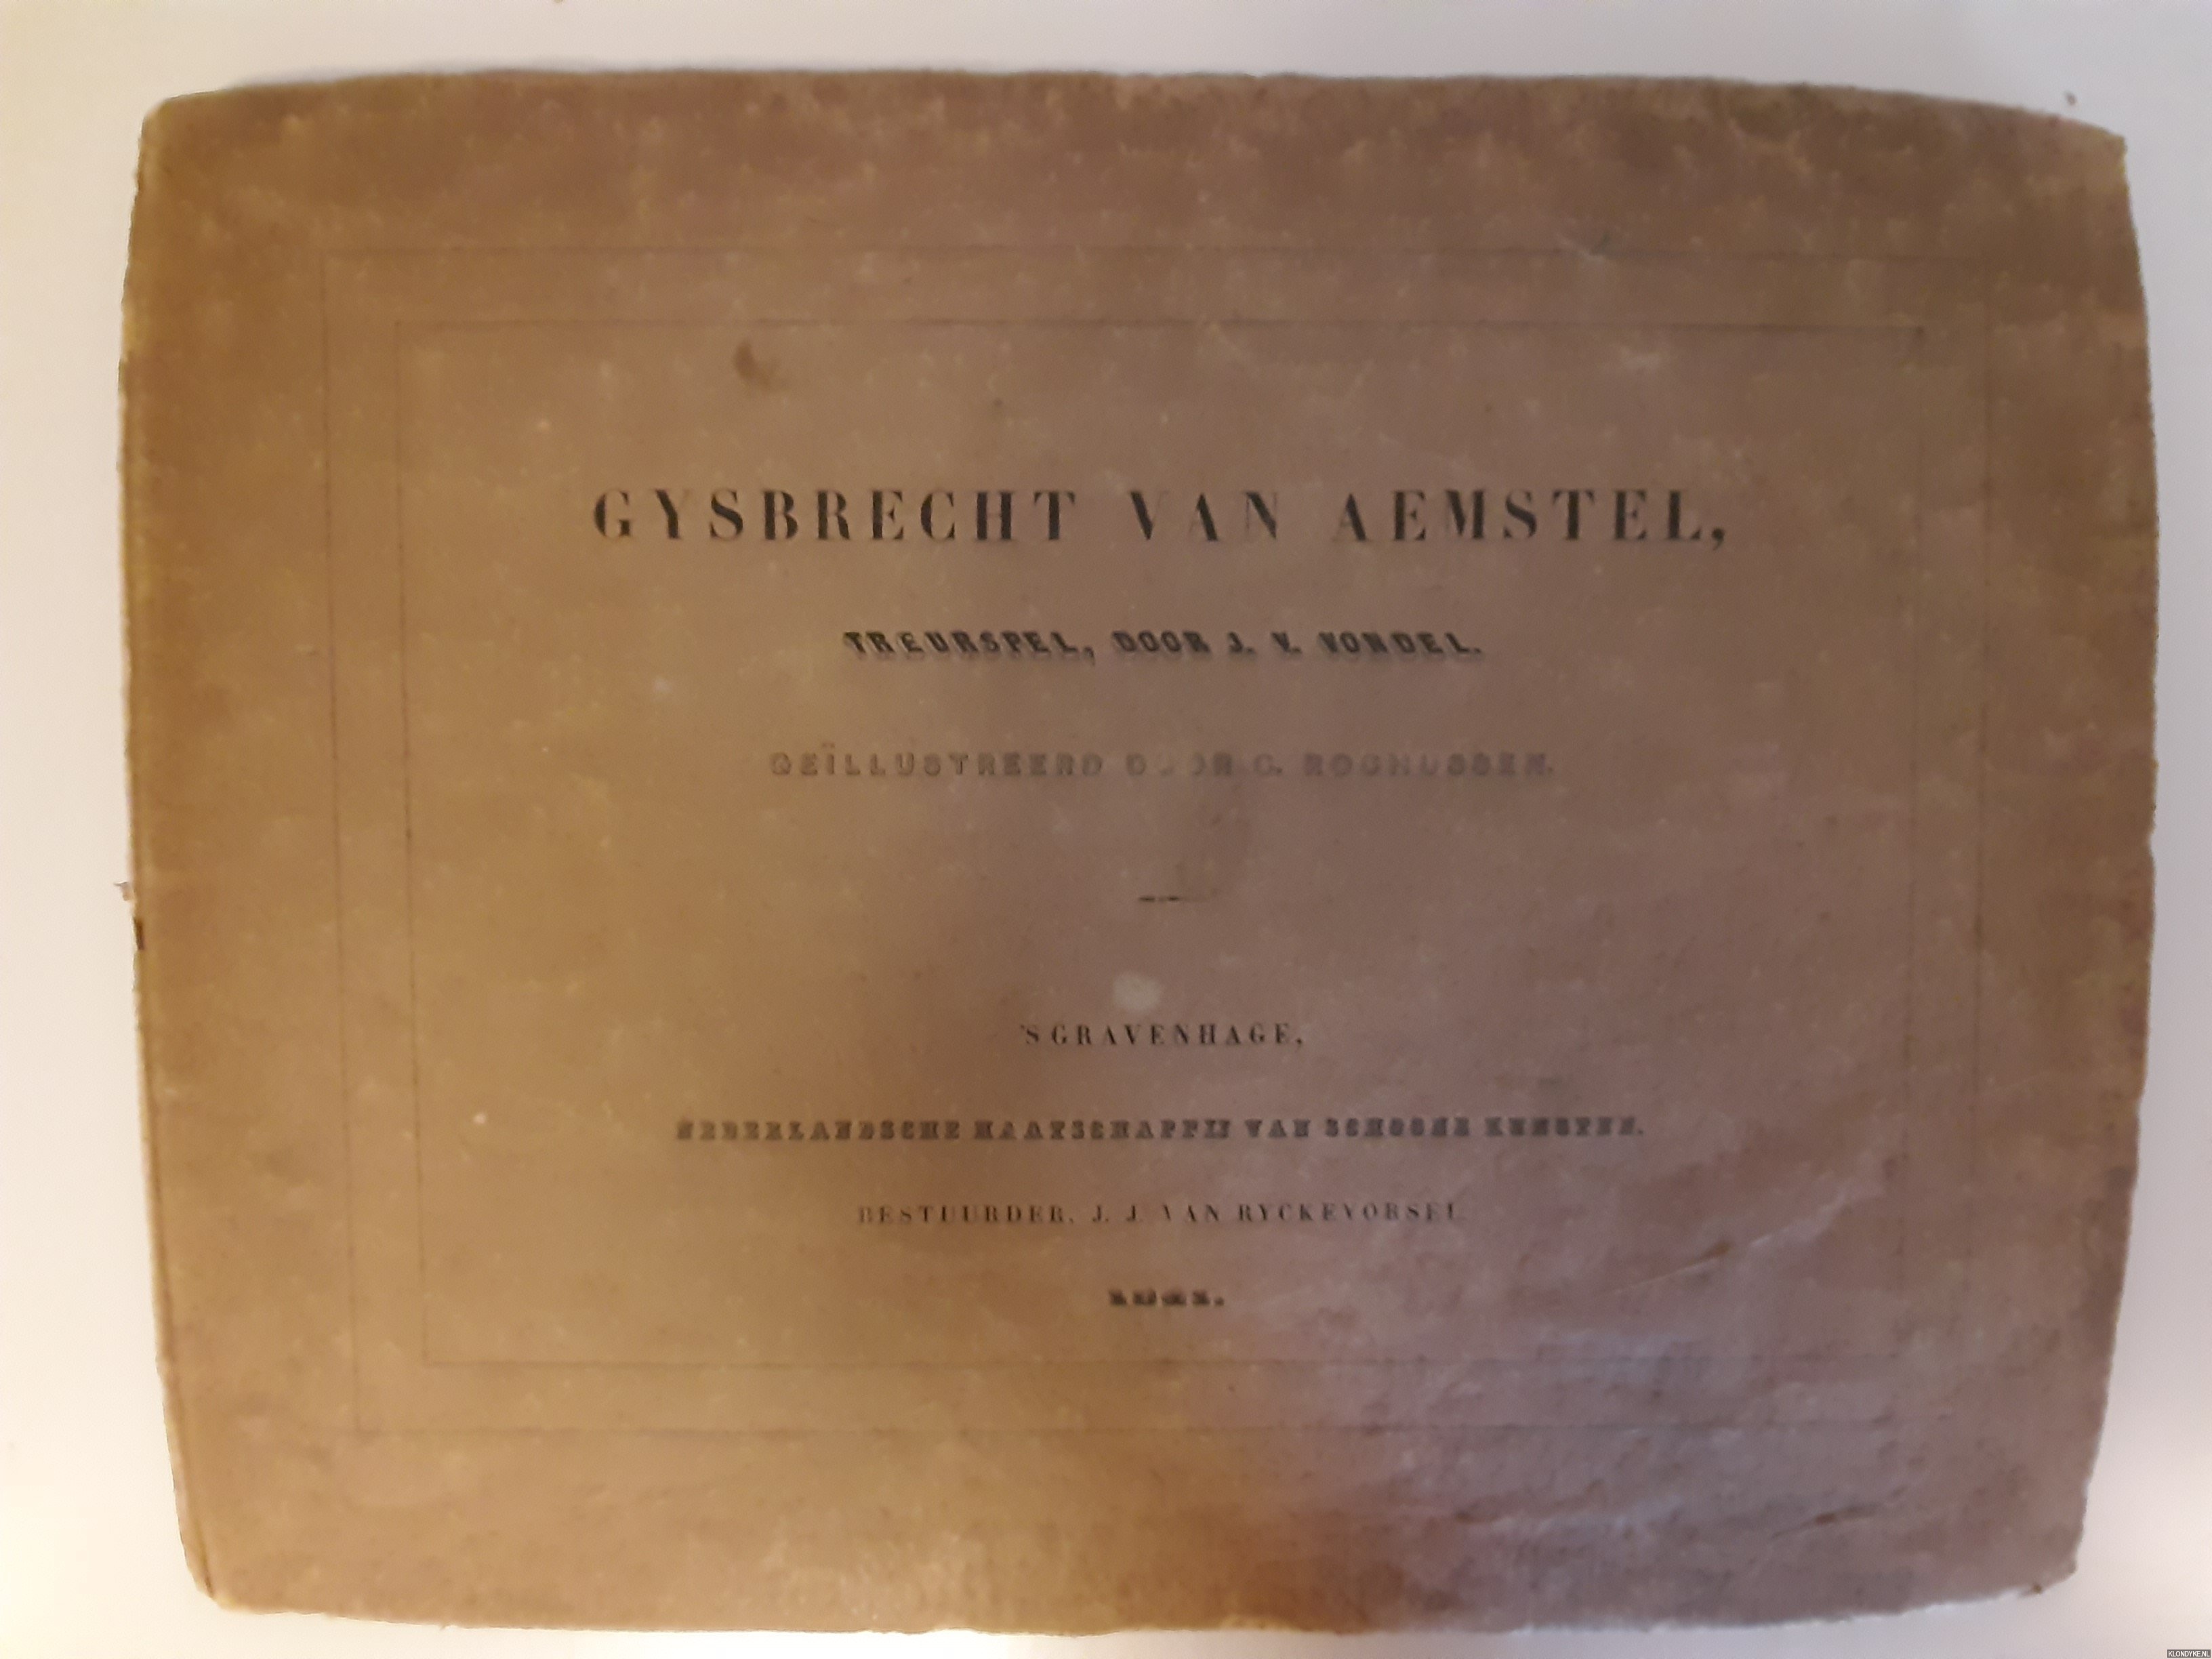 Vondel, J. v. & C. Rochussen (gellustreerd door) - Gysbrecht van Aemstel, treurspel